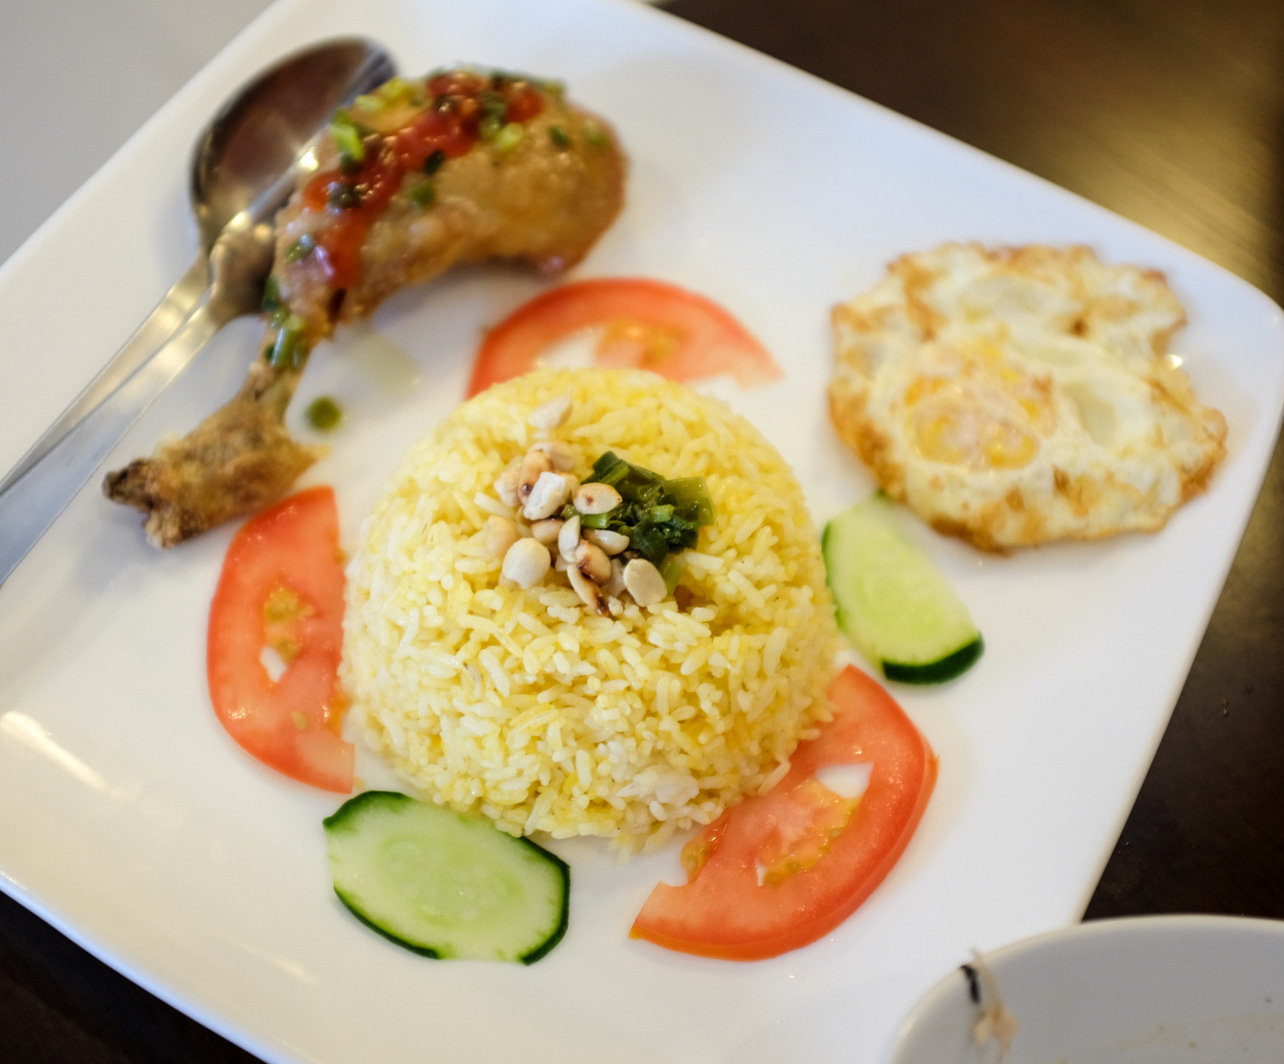 6. Highland Viet - chicken with rice